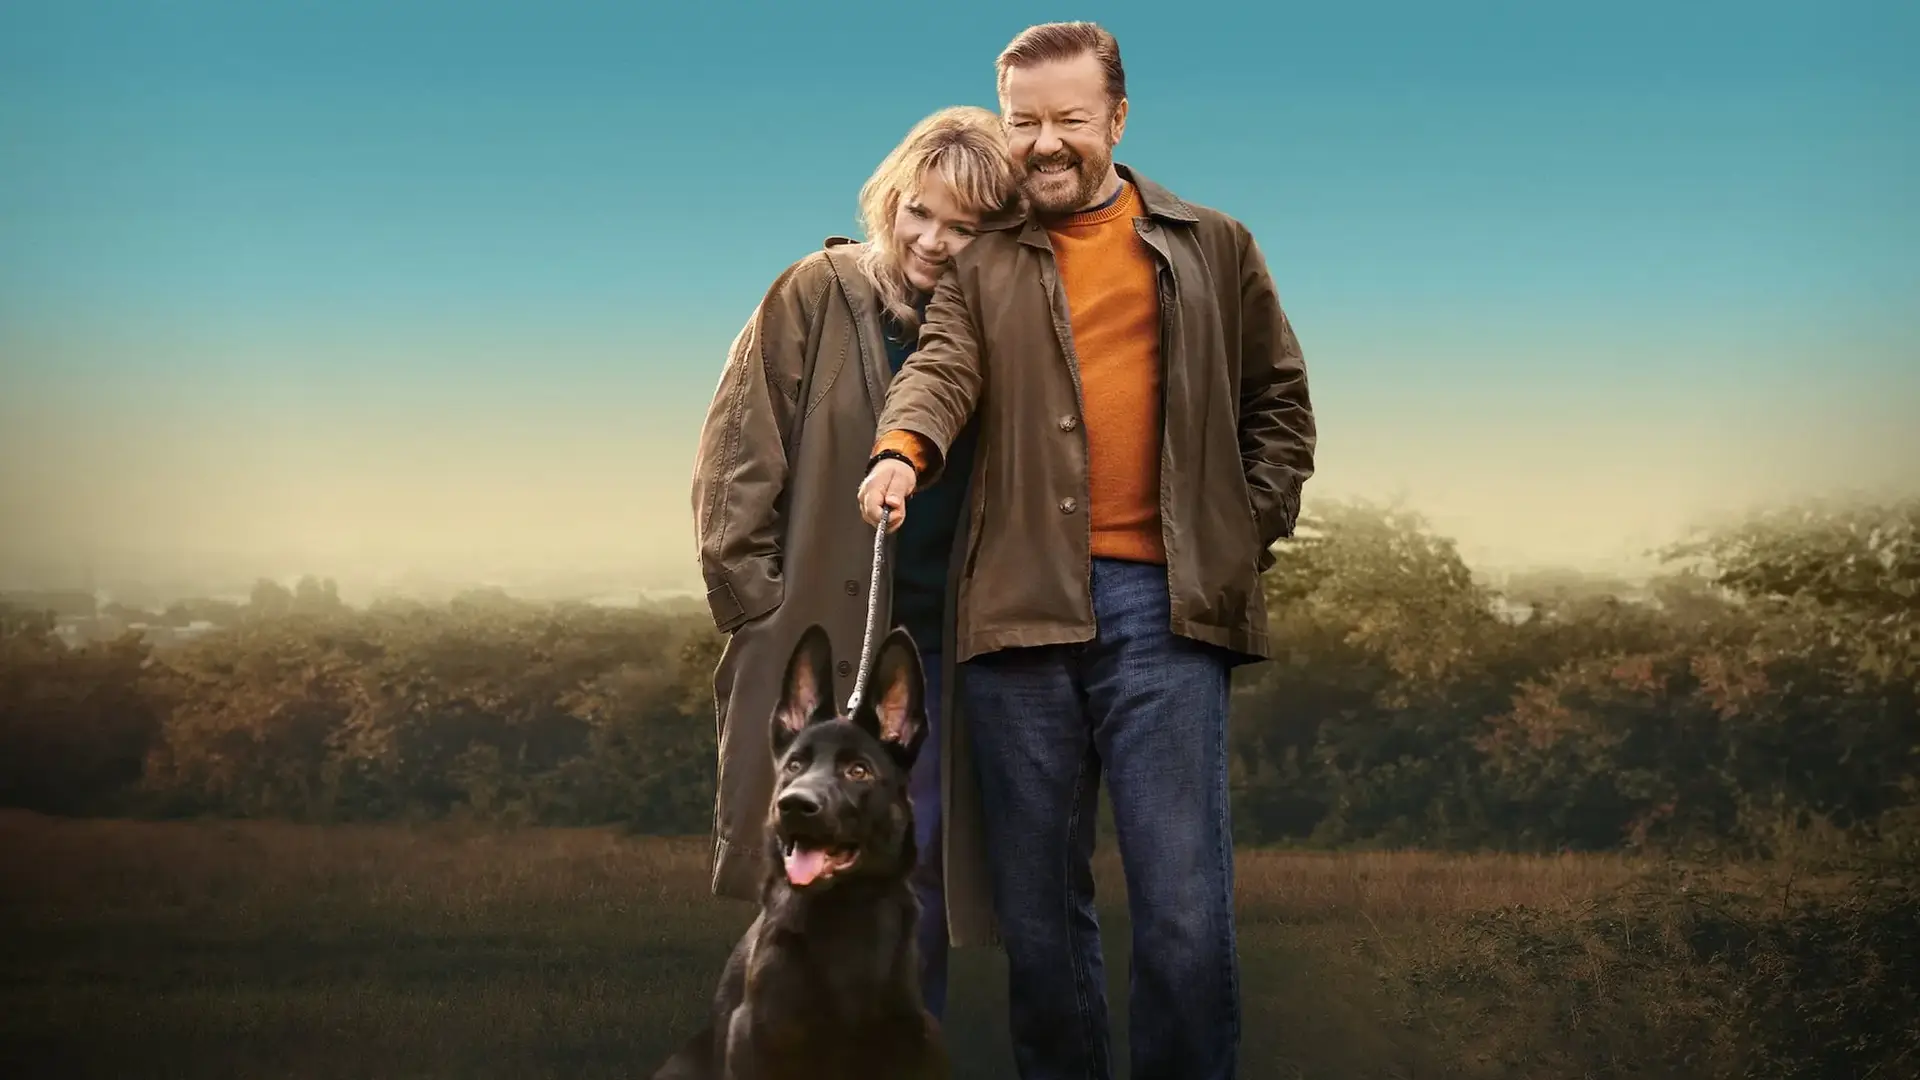 Dónde ver After Life: serie online, temporadas y reparto con Ricky Gervais